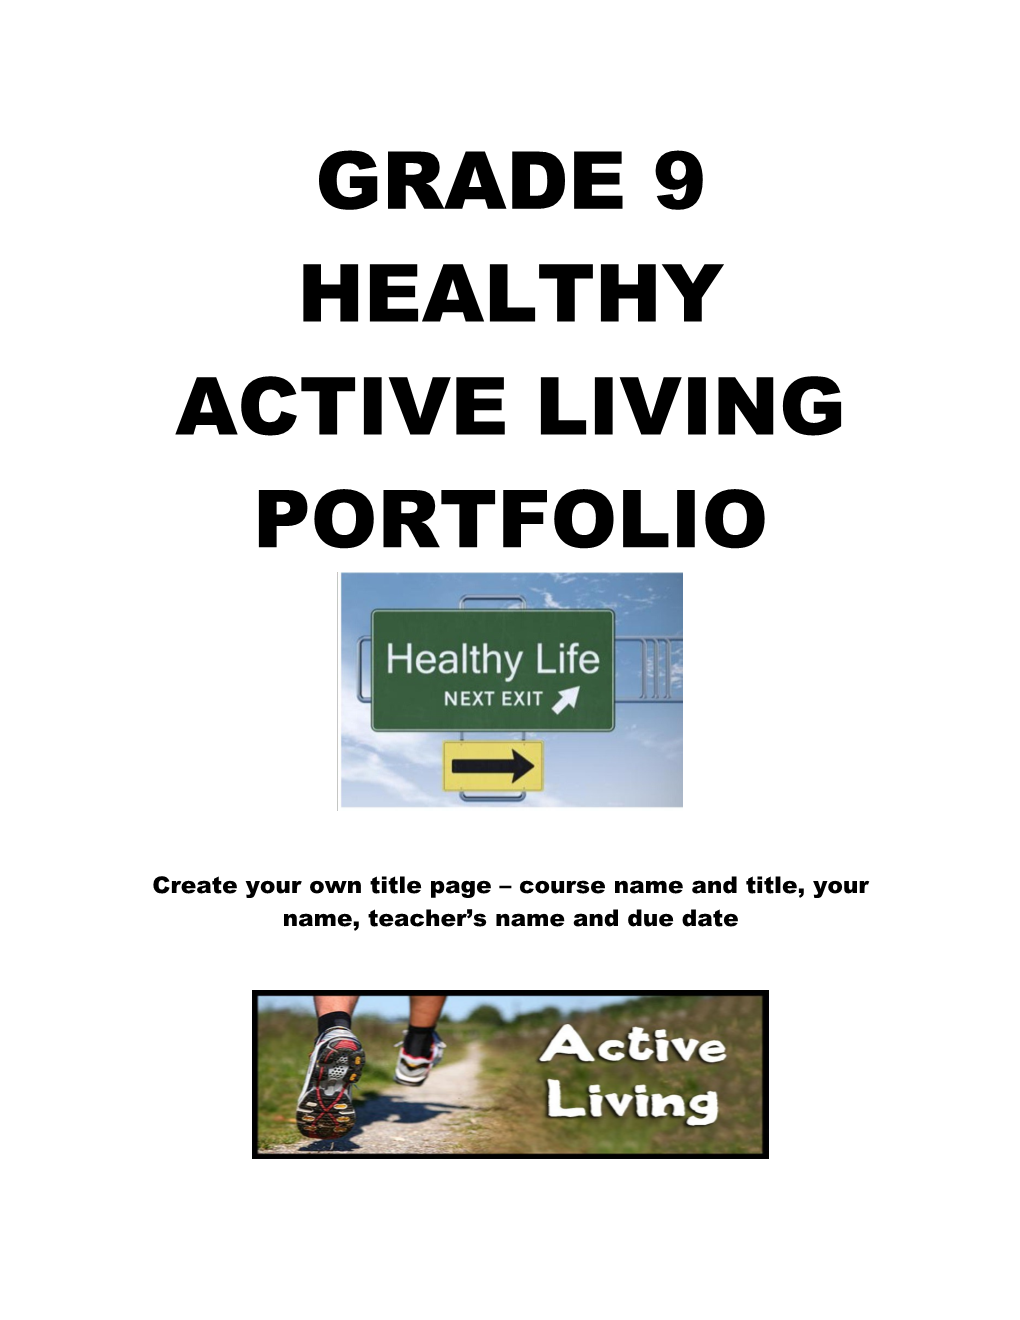 Grade 9 Healthy Active Living Portfolio